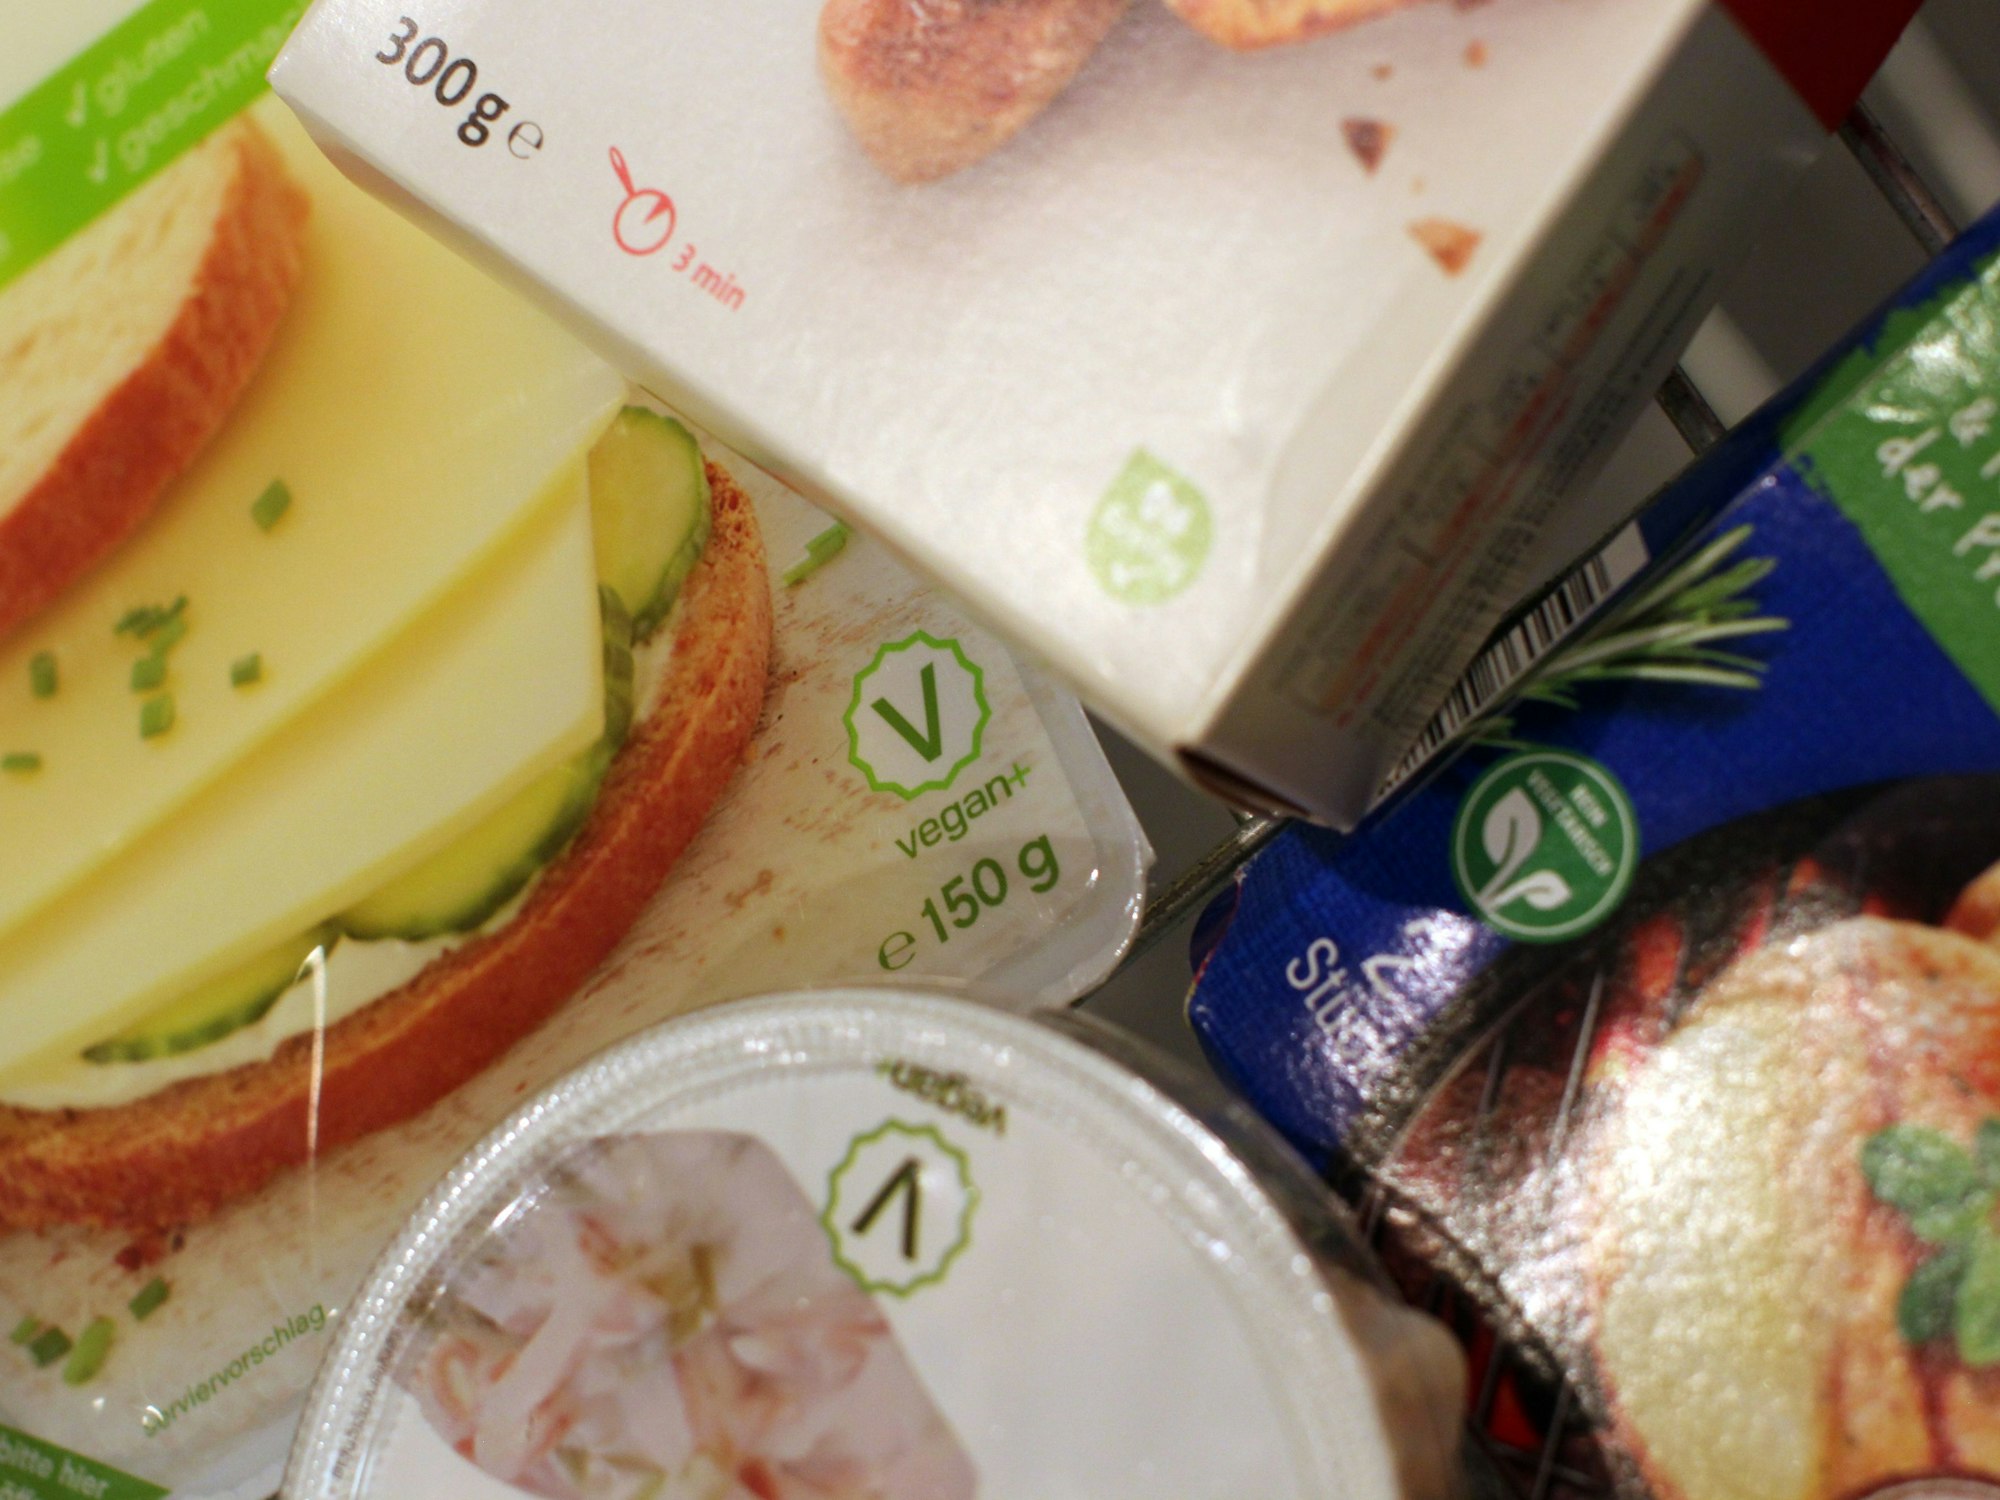 Produkte mit verschiedenen Vegetarier- und Veganer-Labeln liegen in einem Supermarkt in einem Einkaufswagen